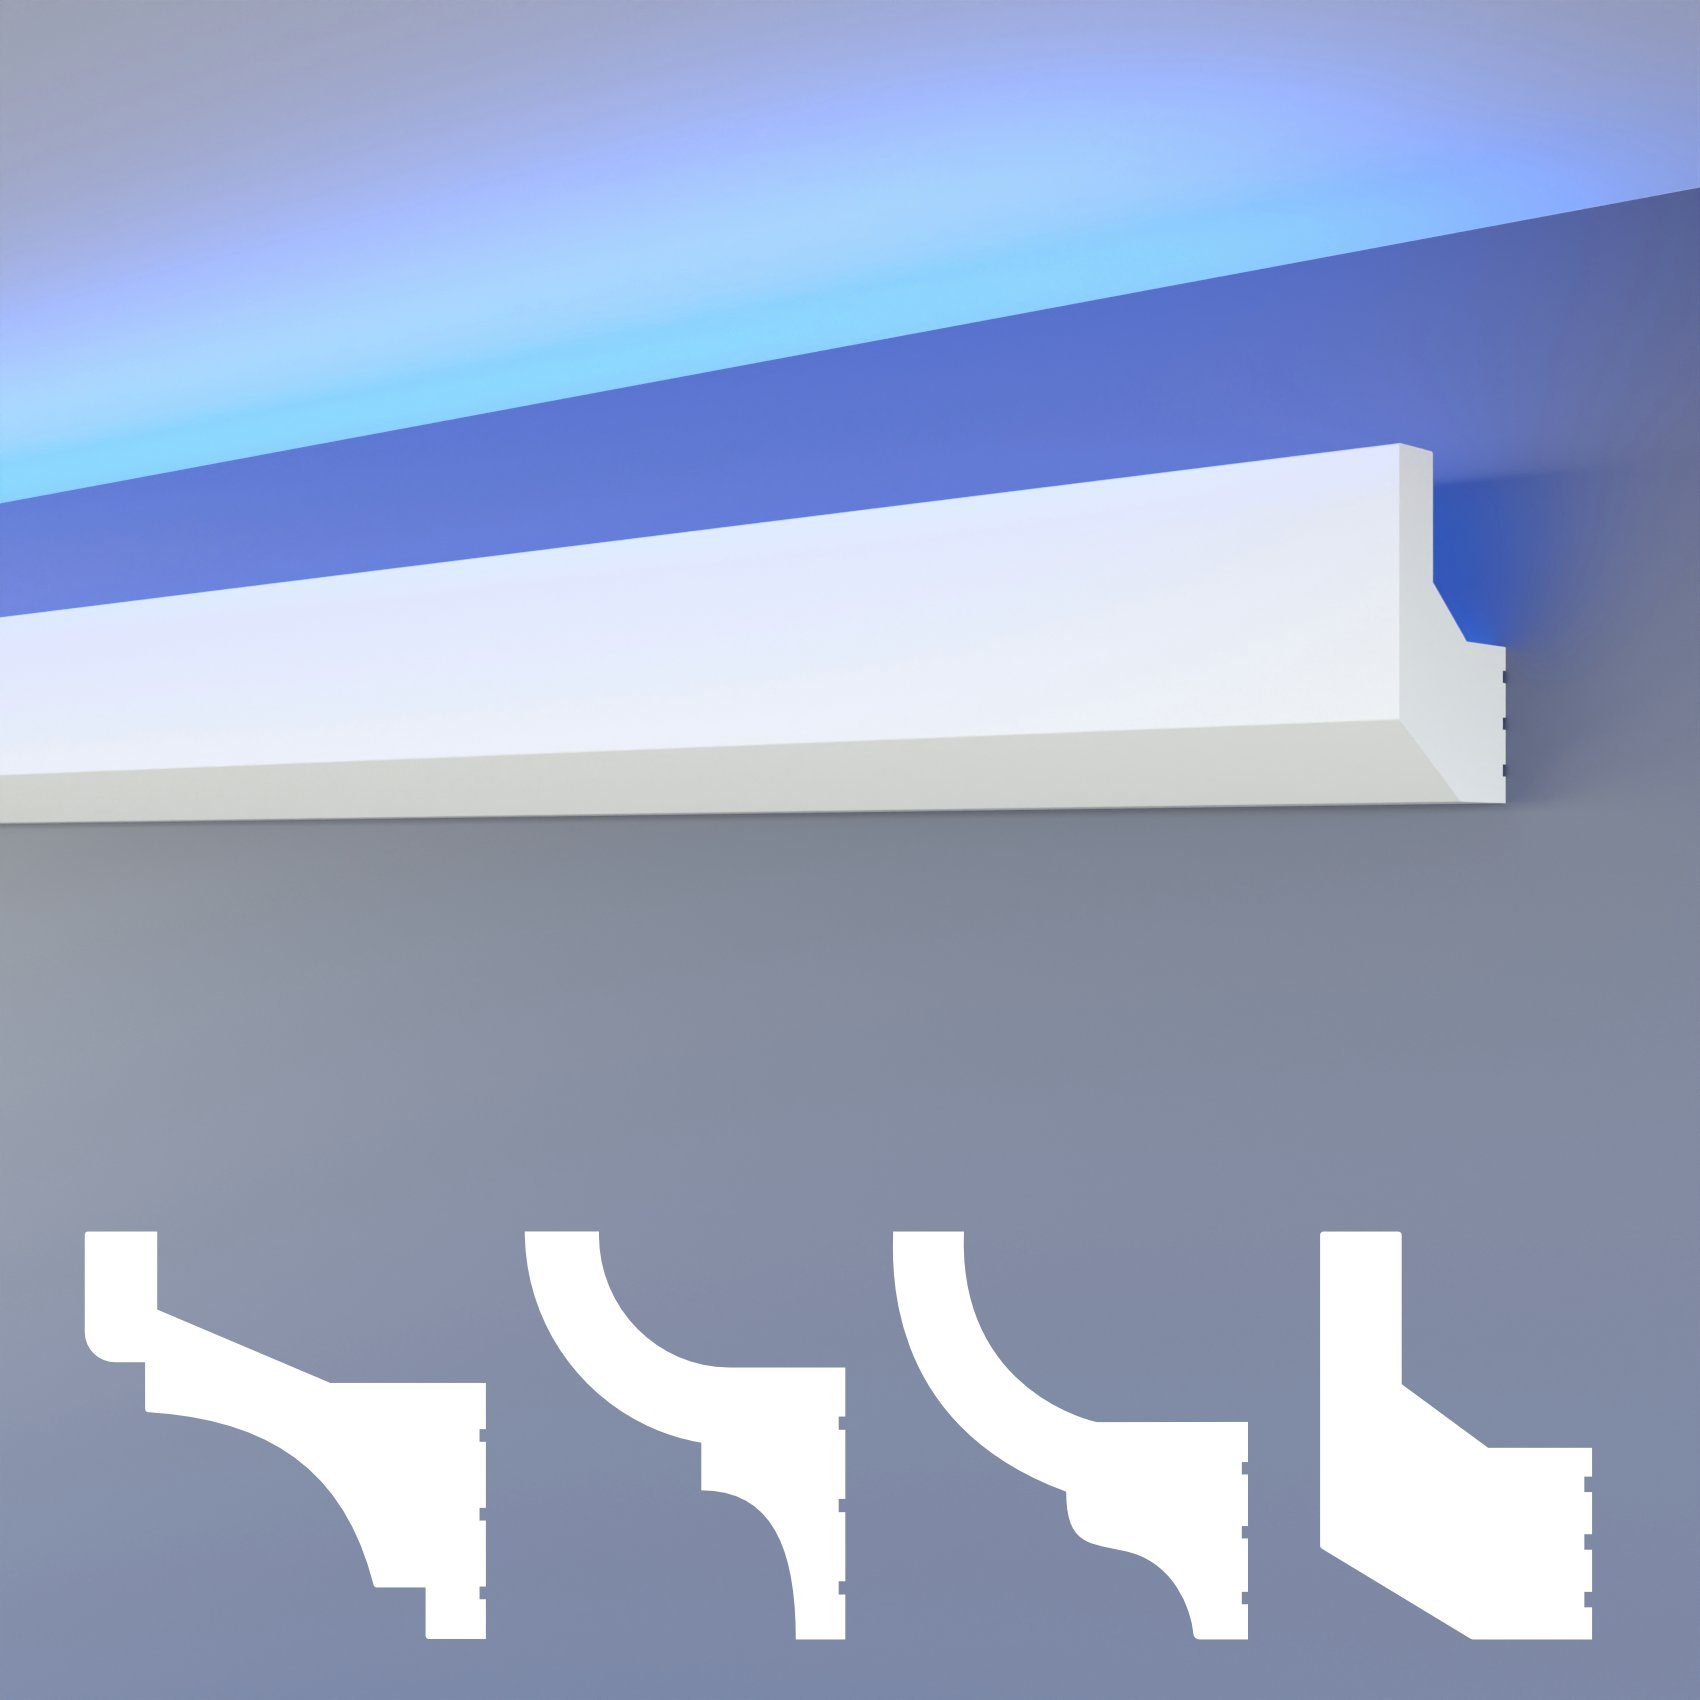 LED Stuckleisten Lichtvoutenprofil indirekte Deckenbeleuchtung Hartschaum